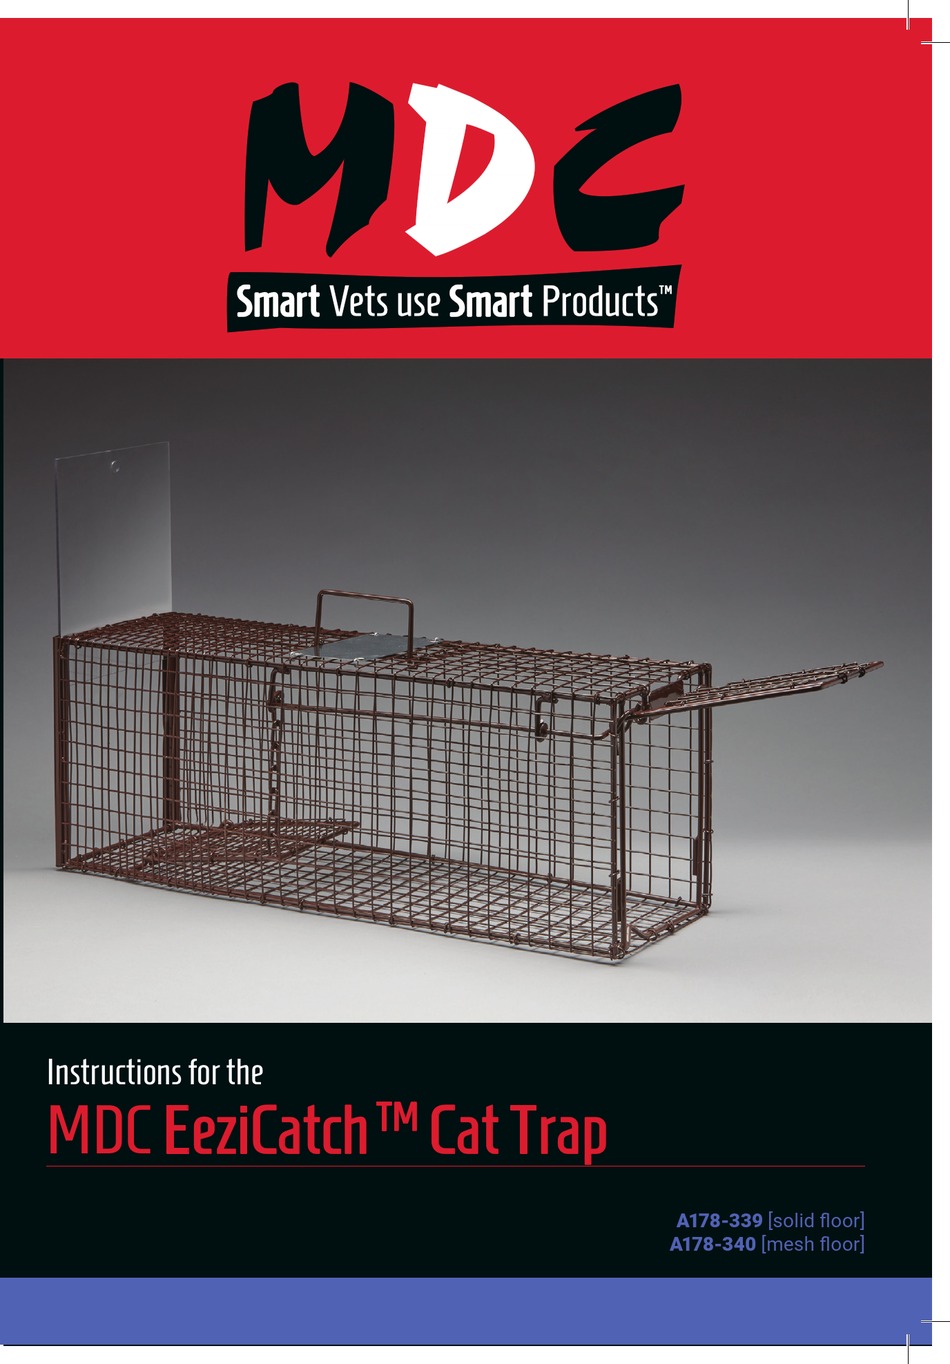 EeziCatch Cat Trap Mesh Floor